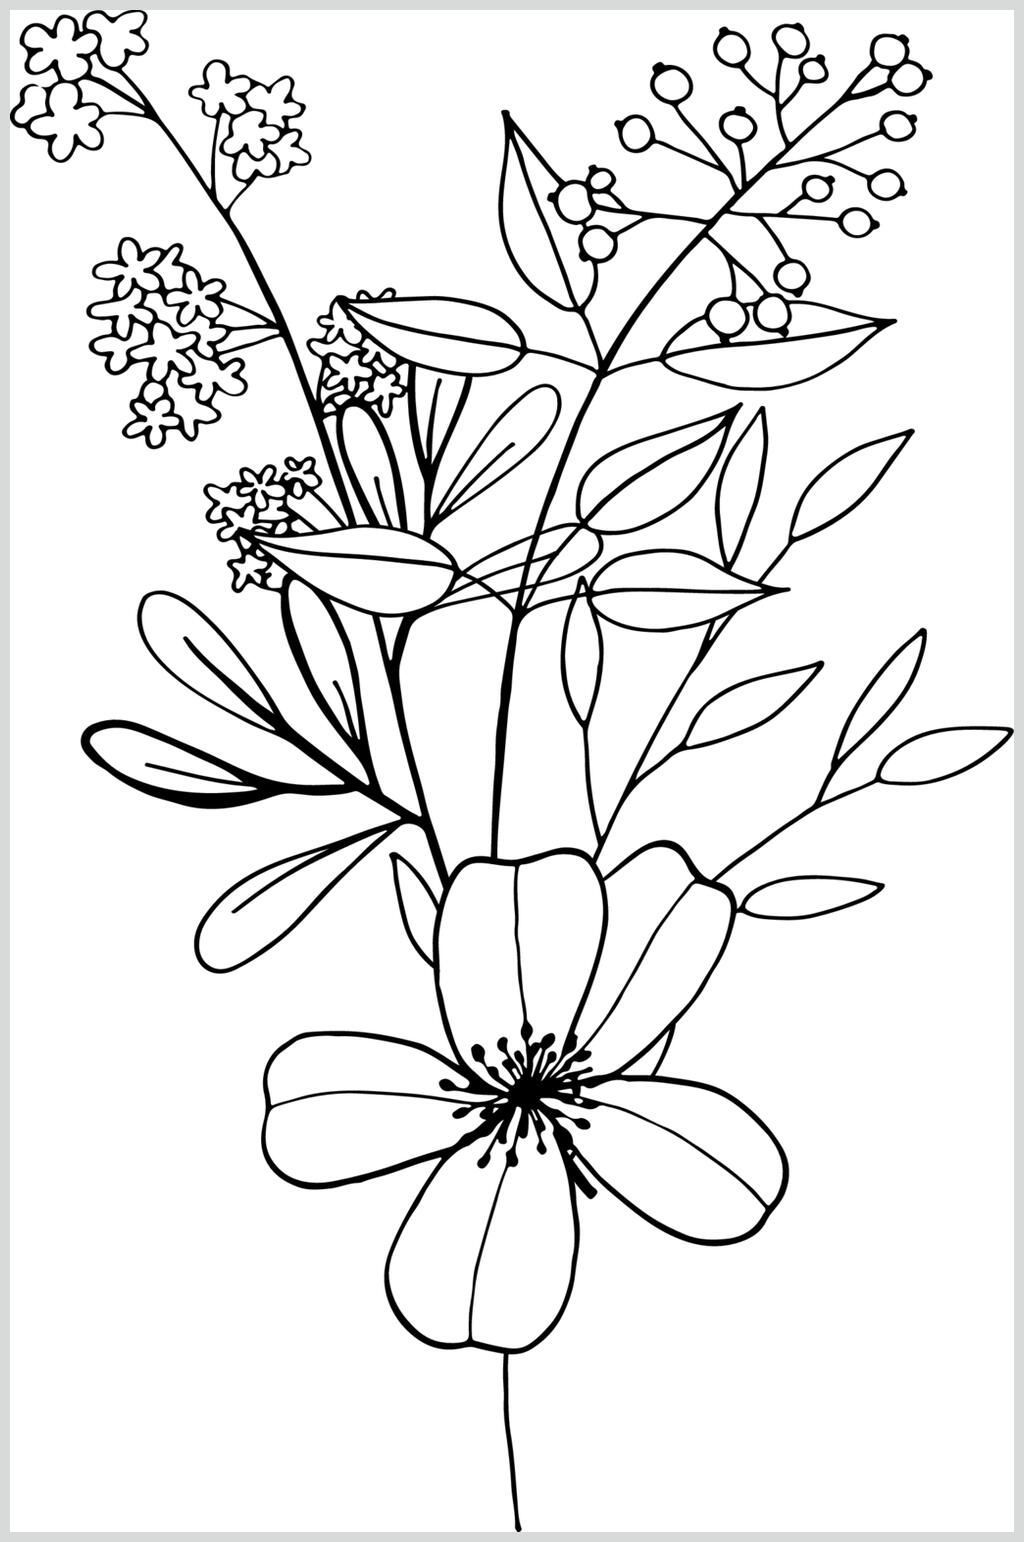 黑白植物各类线描花卉矢量素材